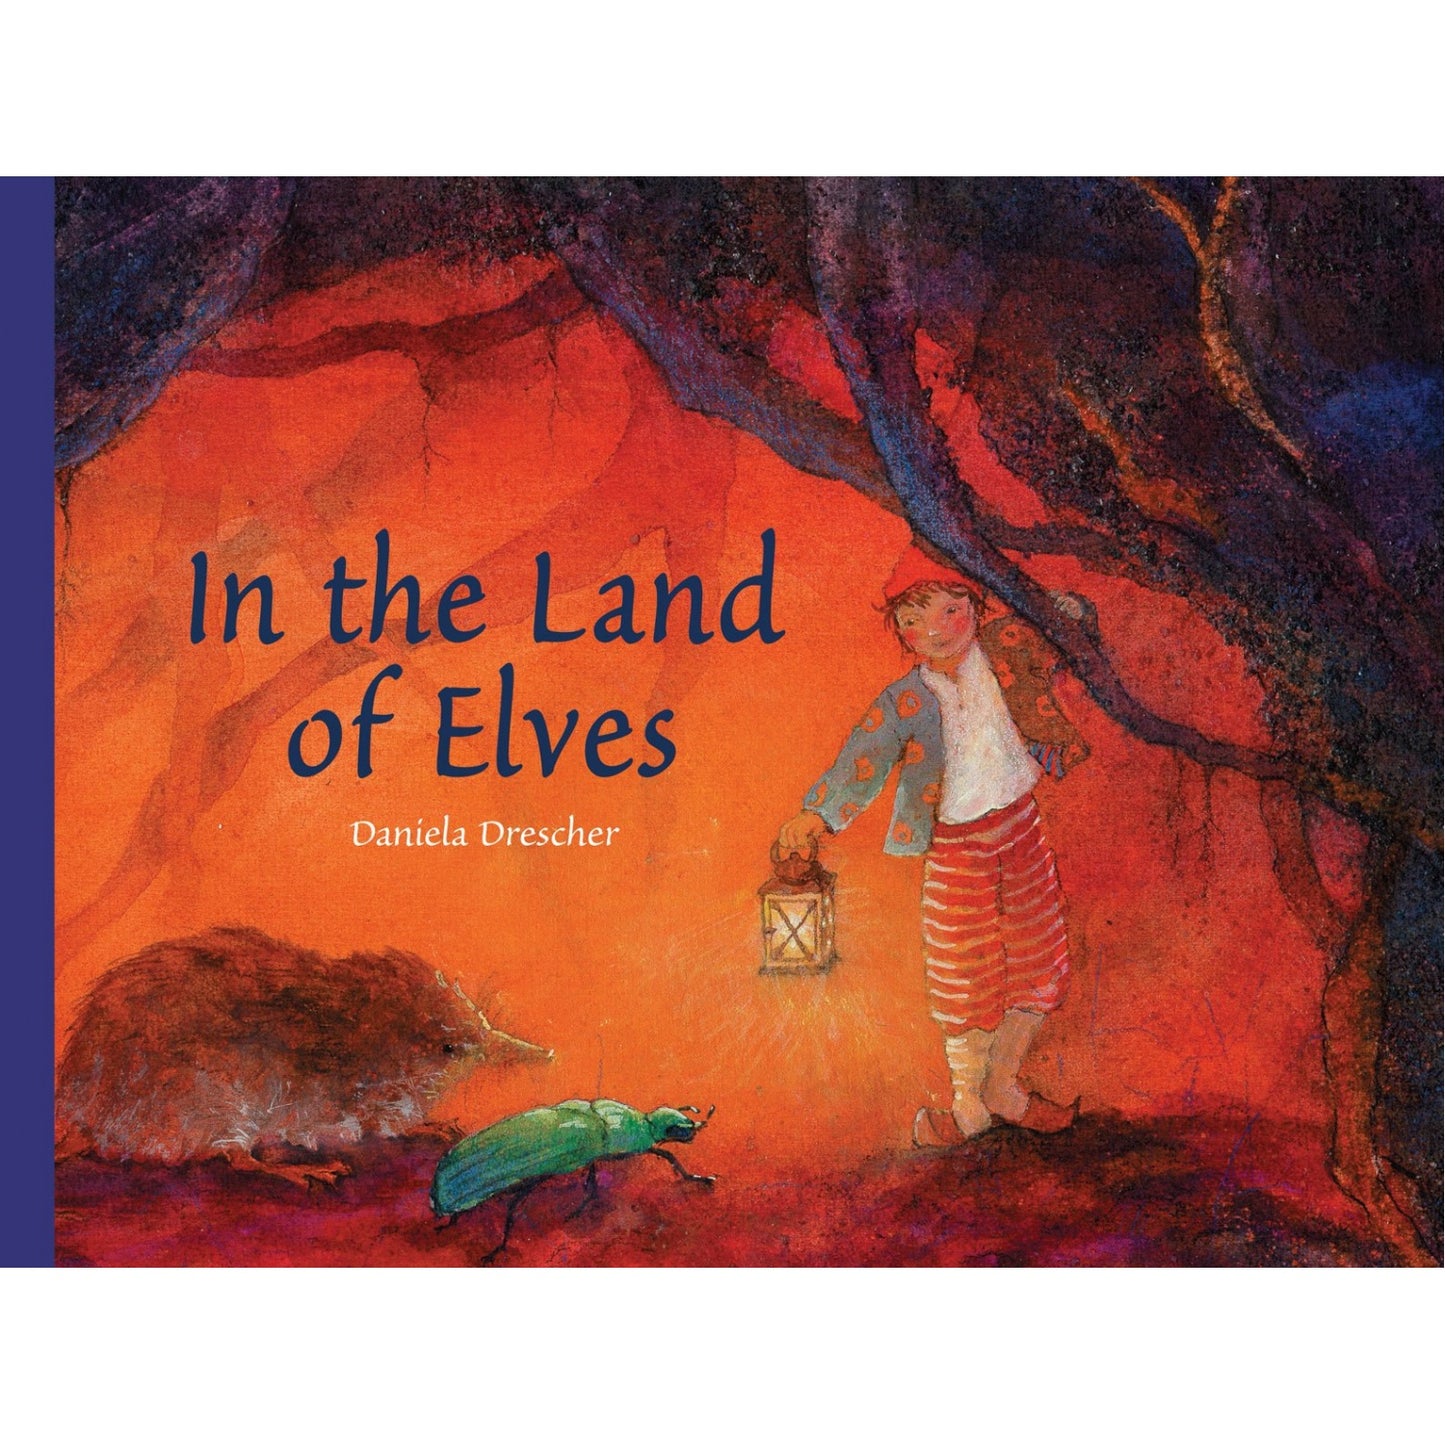 In the Land of Elves | Daniela Drescher | Hardcover | Tales & Myths for Children